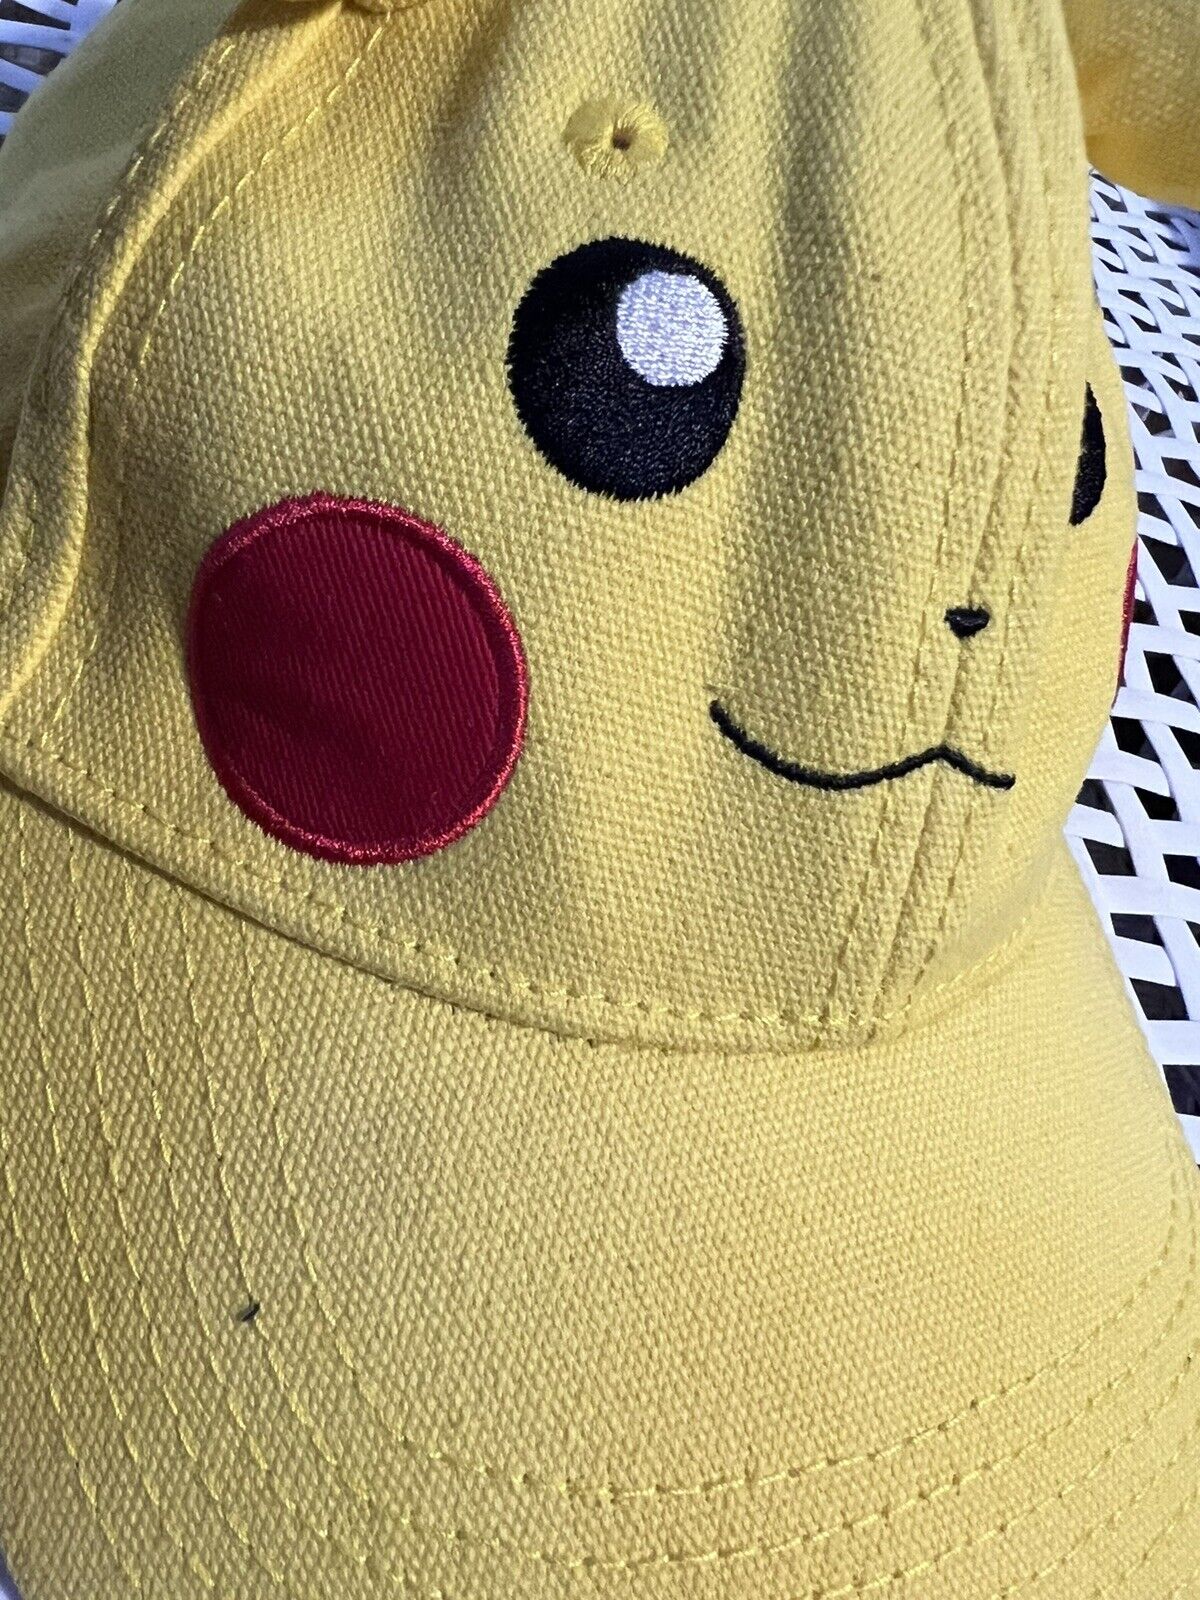 3D Pikachu Ears Dad Hat - Pokemon - image 7